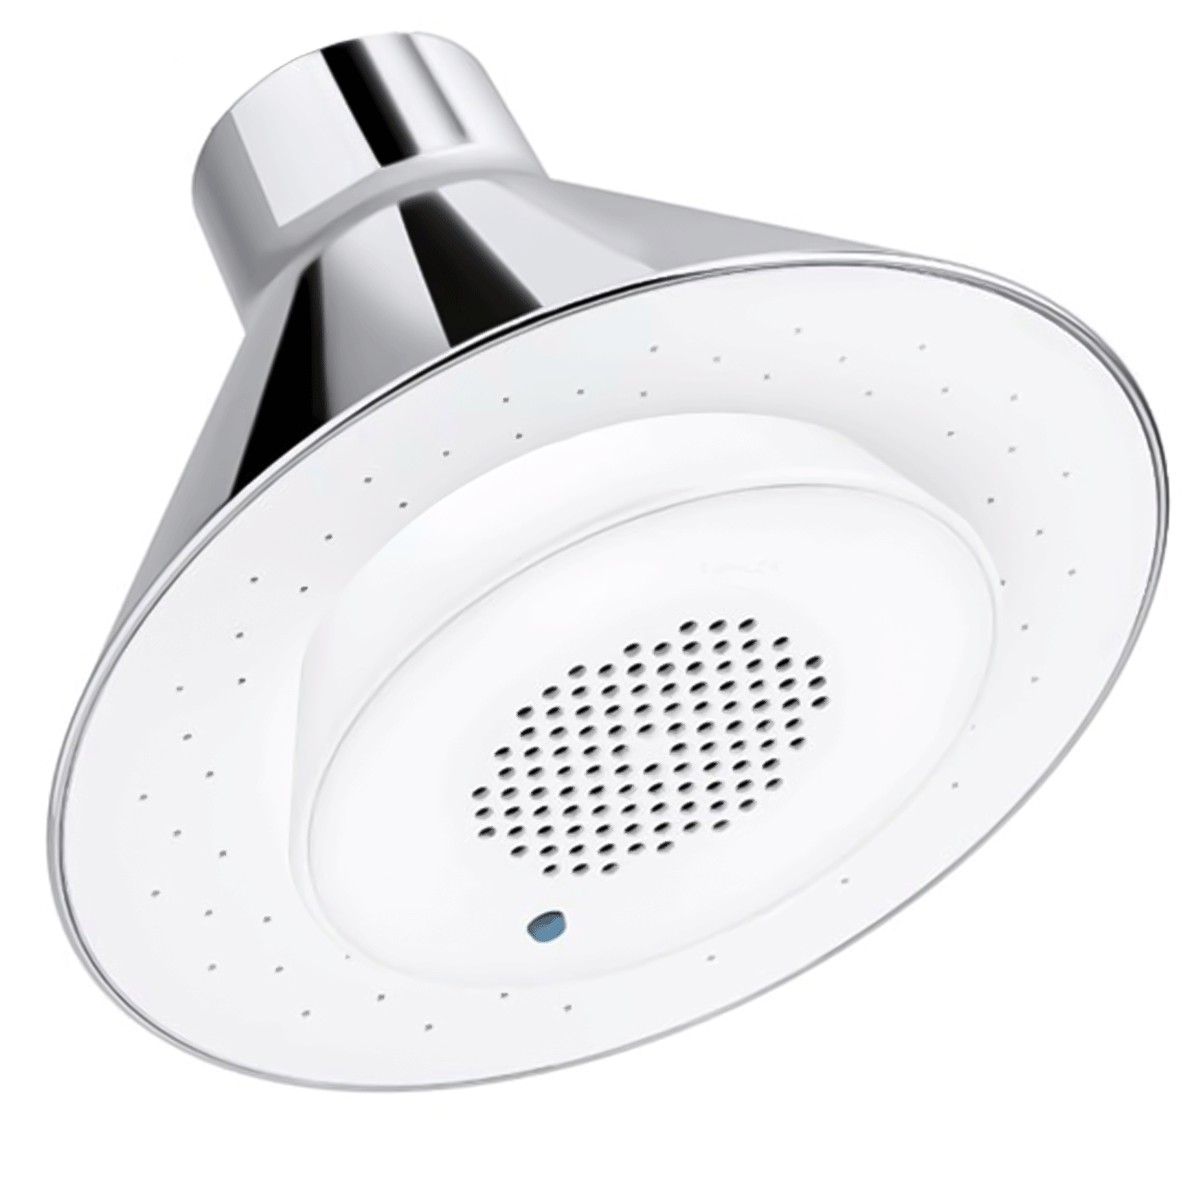 Chuveiro (ducha) de mão luxo cromado com 5 funções - Smart Norte - Produtos  inovadores a um preço justo